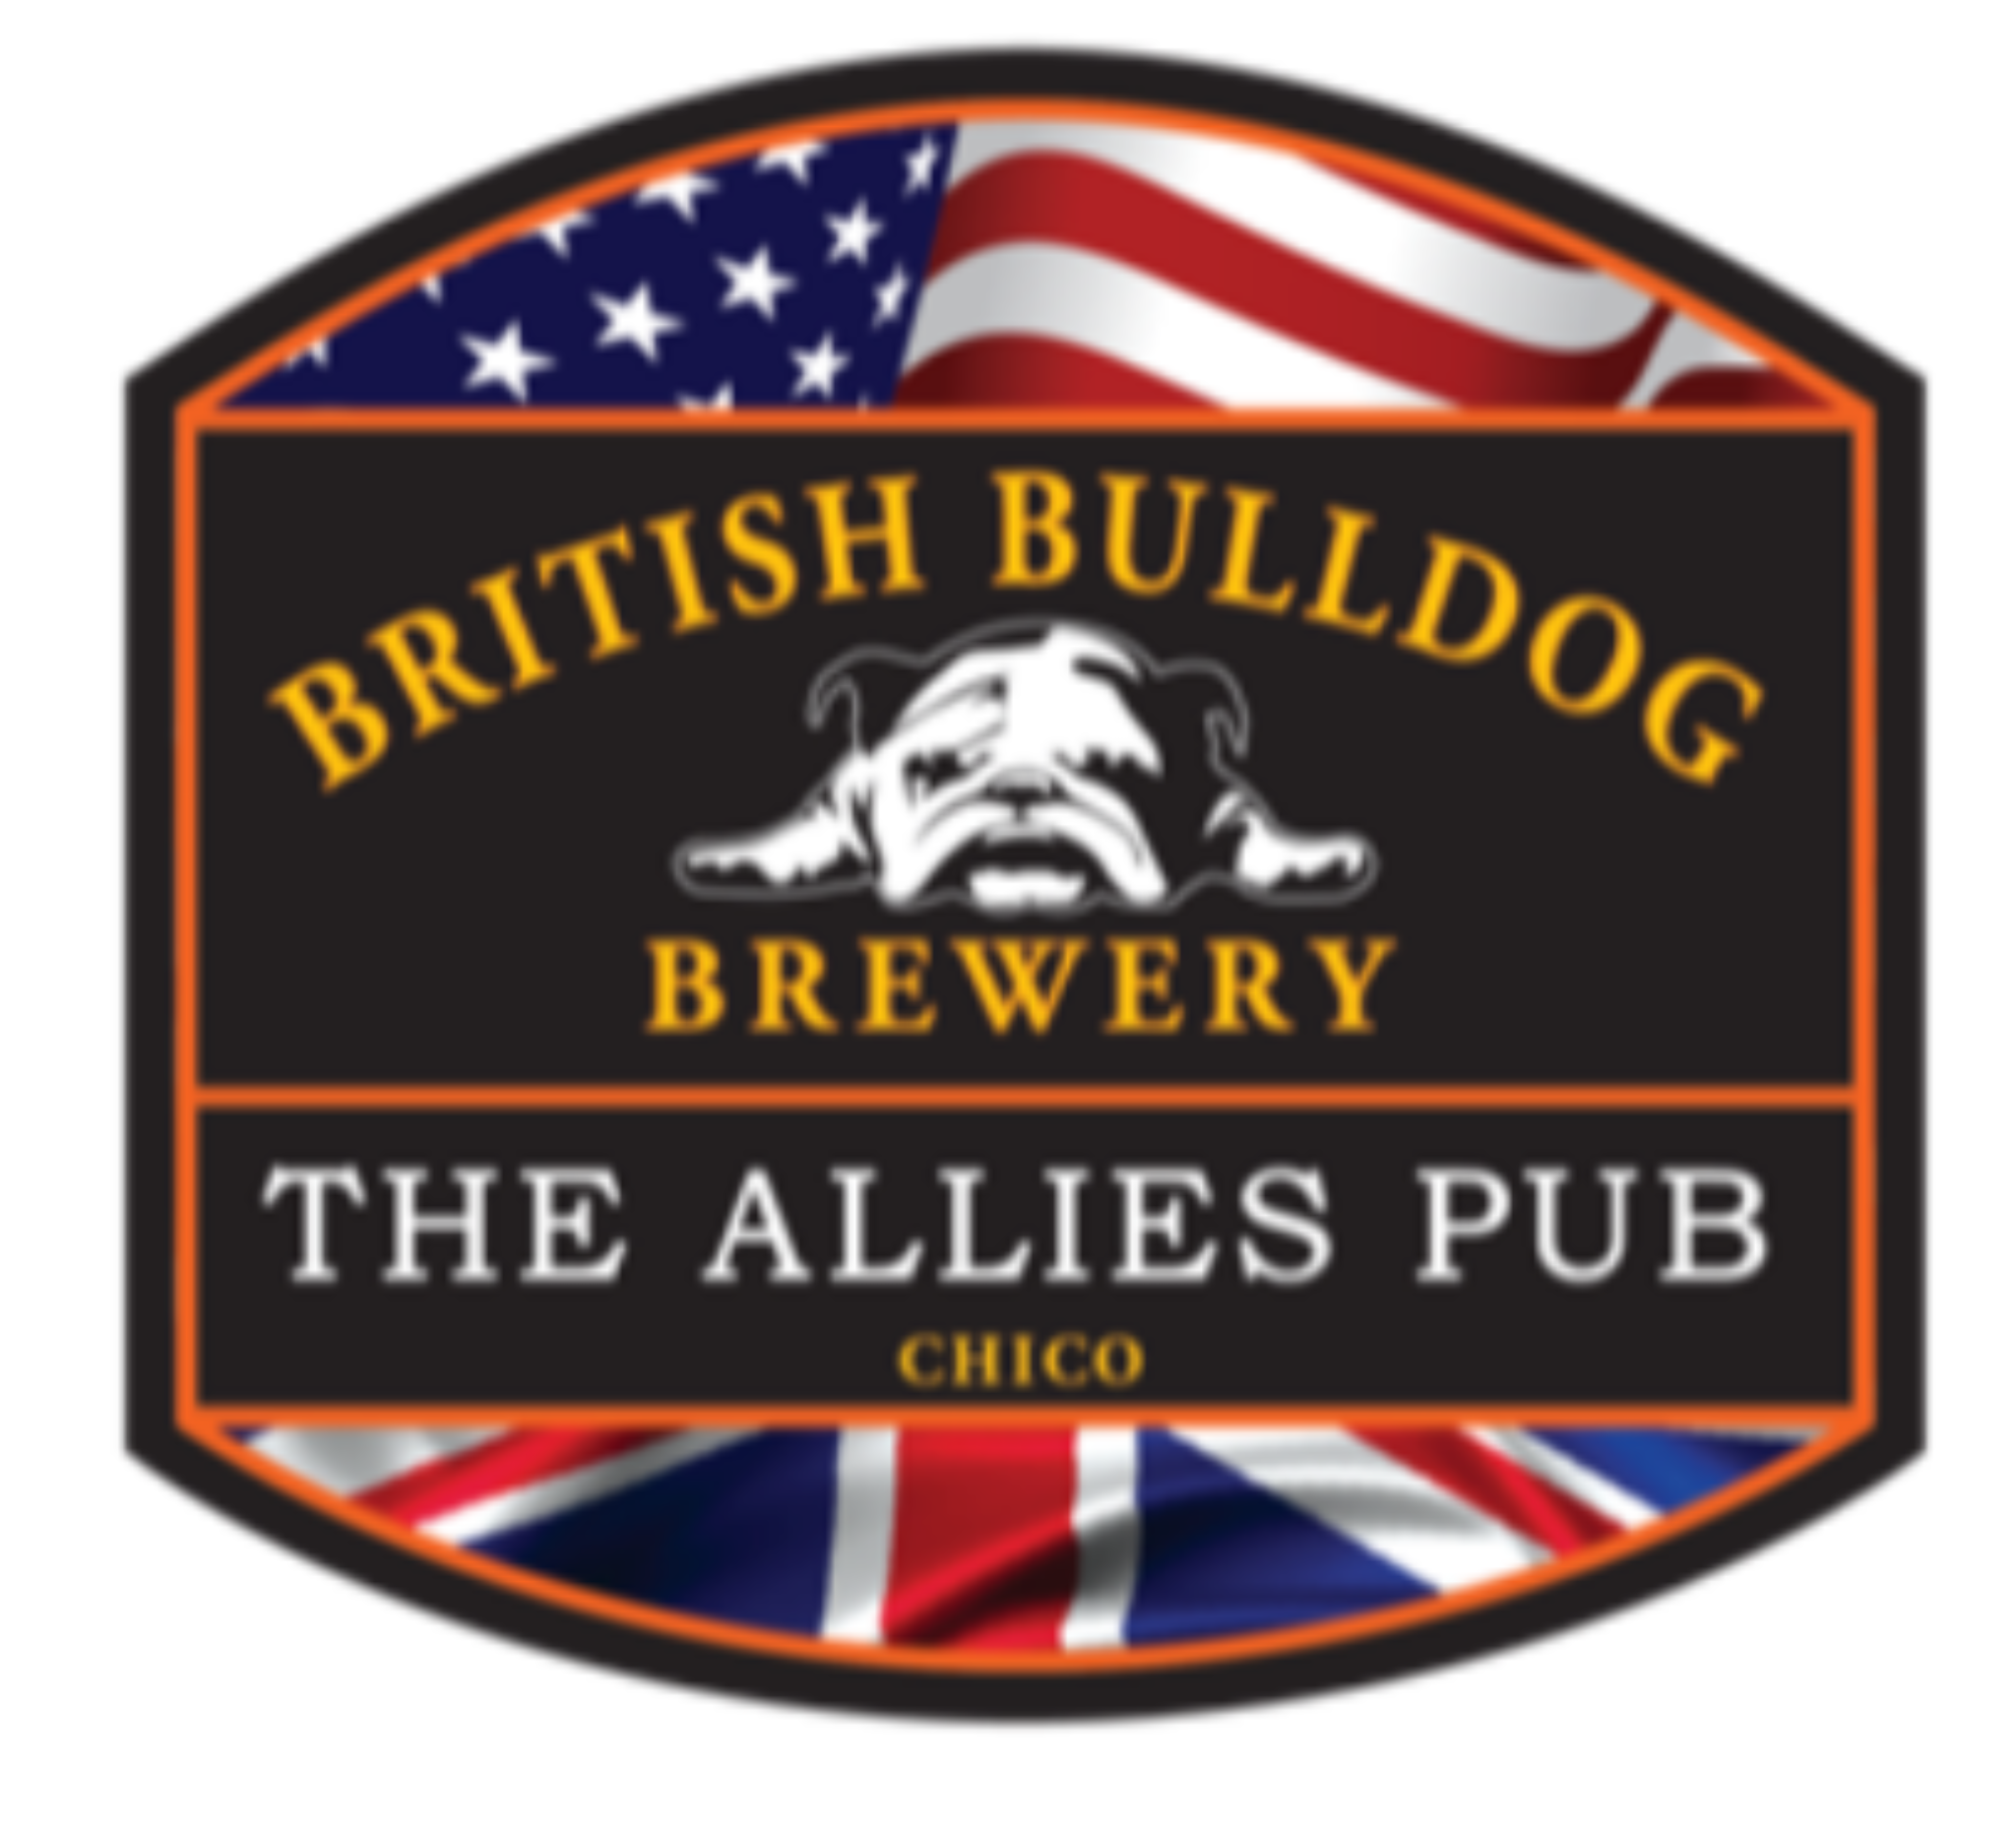 The Allies Pub